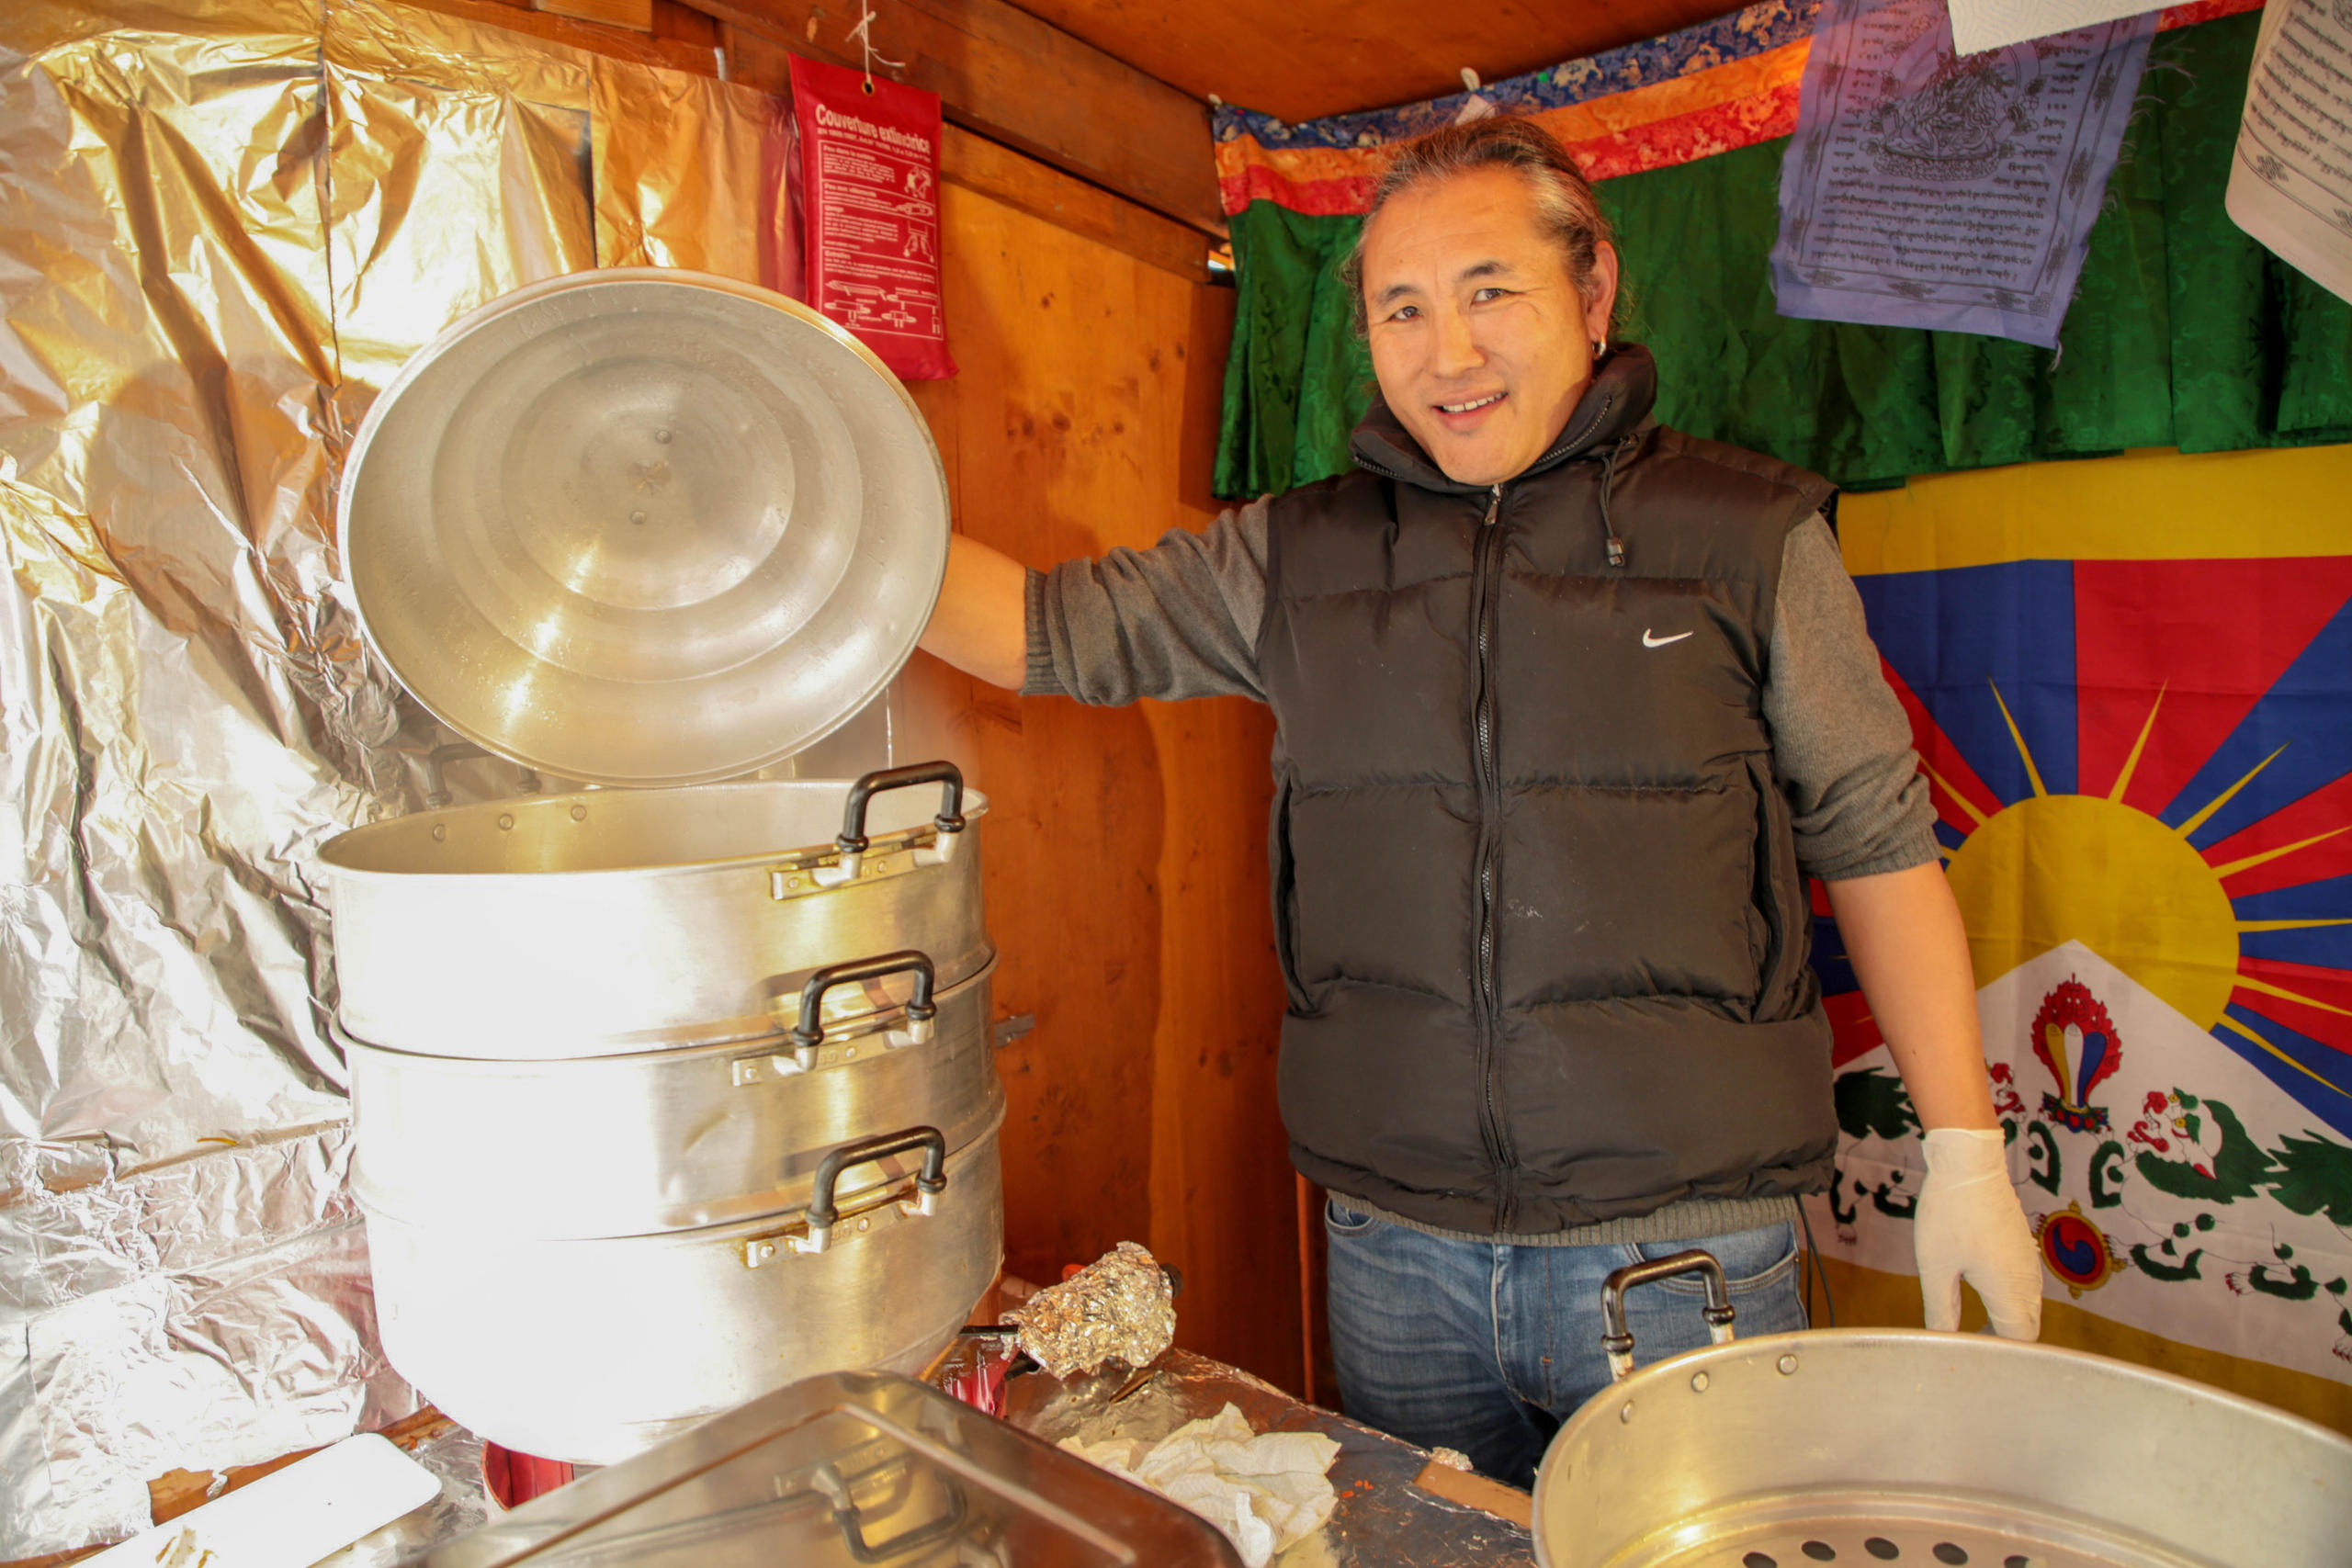 رجل من التبت يُظهر ماذا يُوجد في وعاء له